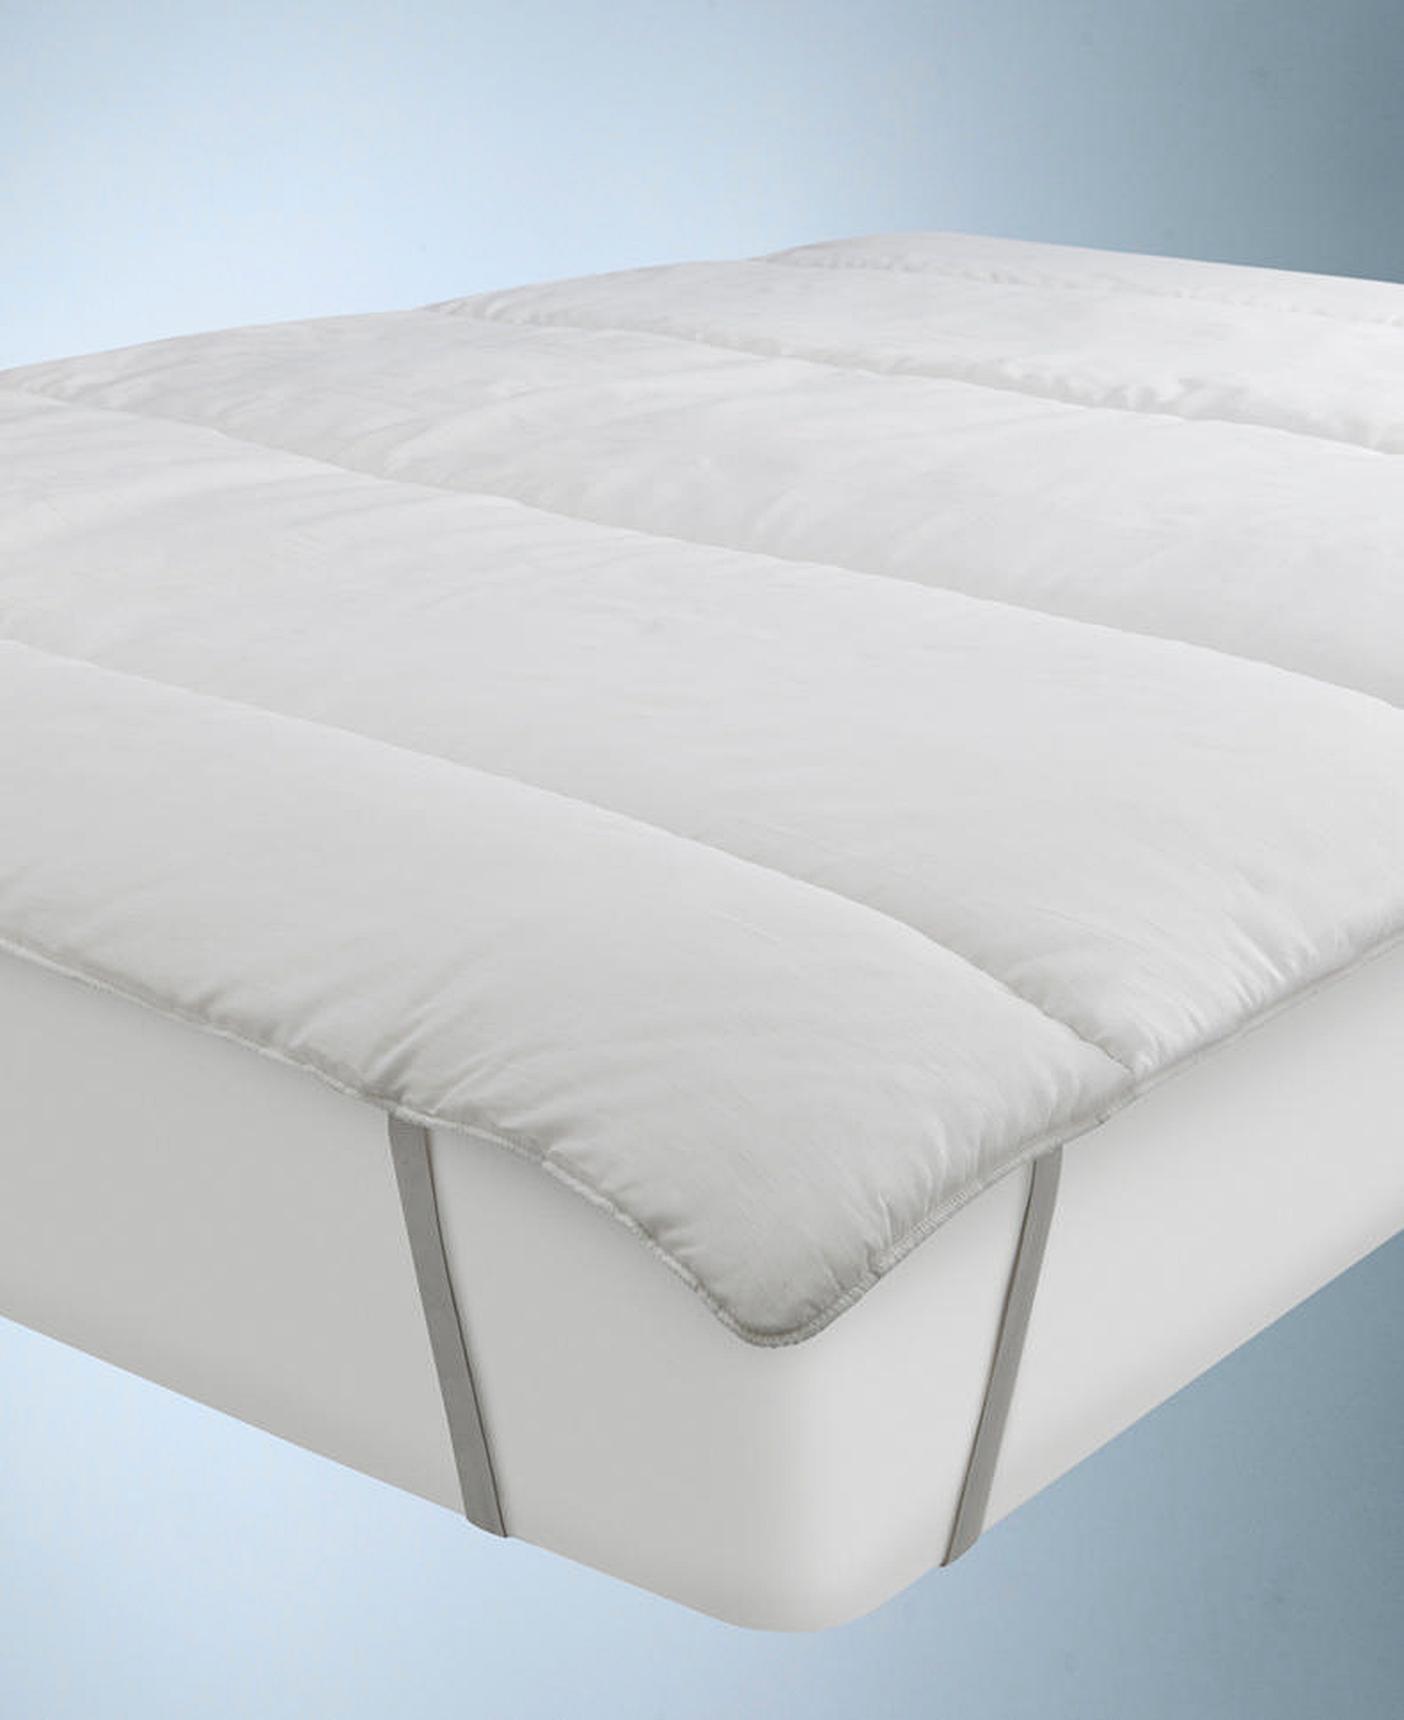 deepsleep mattress